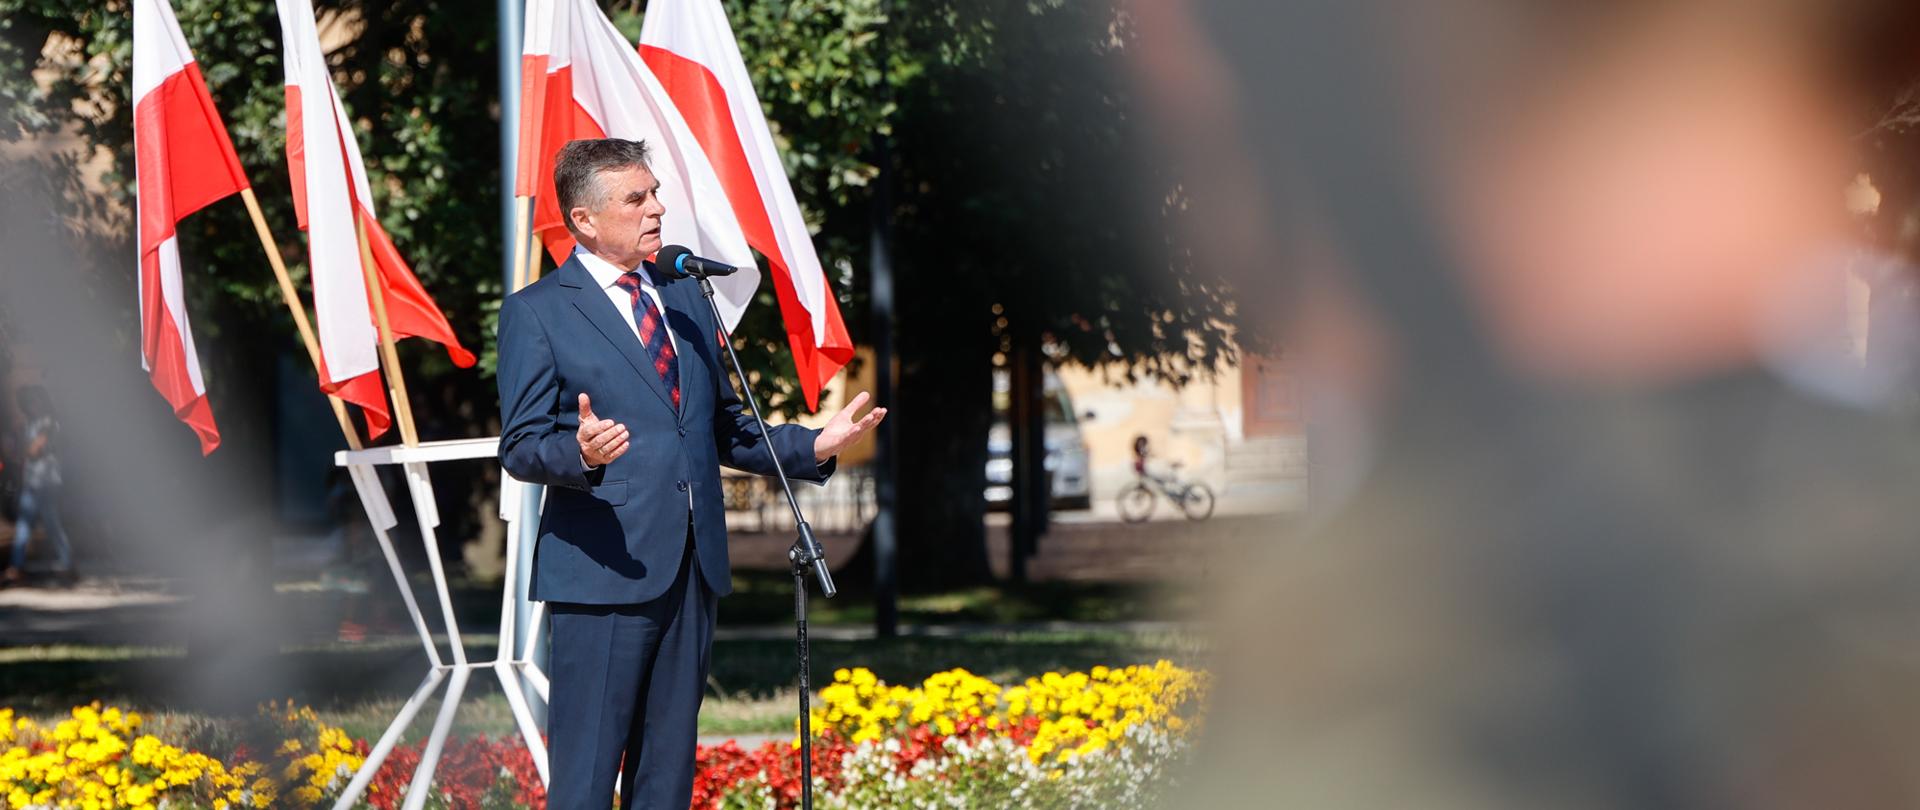 Wojewoda lubelski przemawia. W tle flagi polskie i kwiaty.